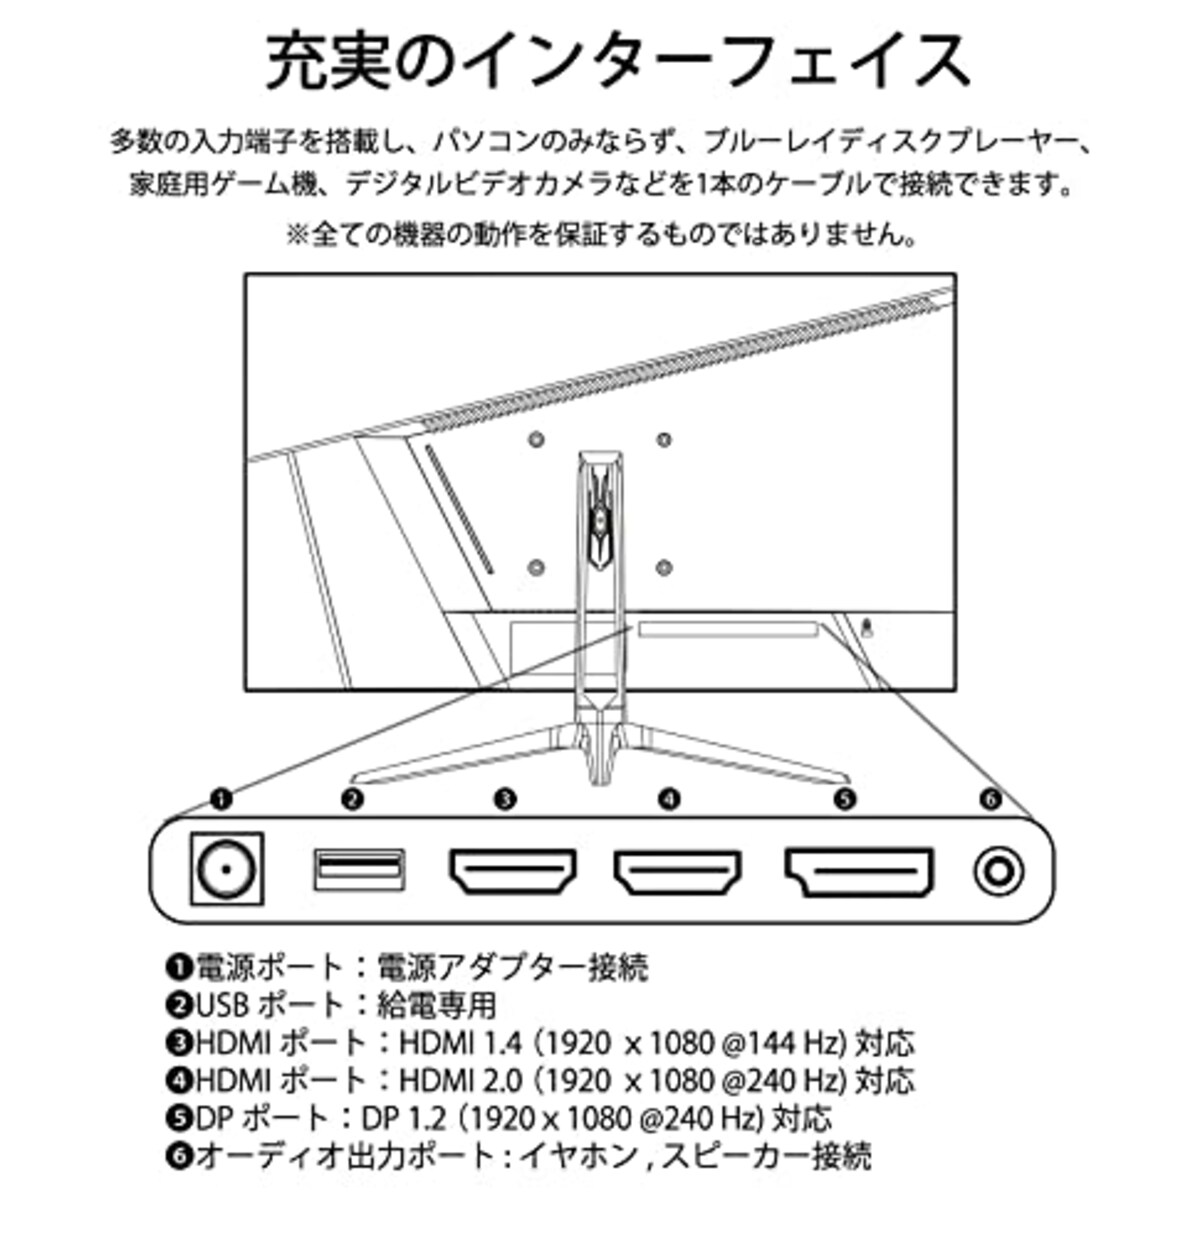  【Amazon.co.jp限定】JAPANNEXT 24.5型IPS フルHDパネル搭載240Hz対応ゲーミングモニター JN-I245FR240 HDMI DP画像6 